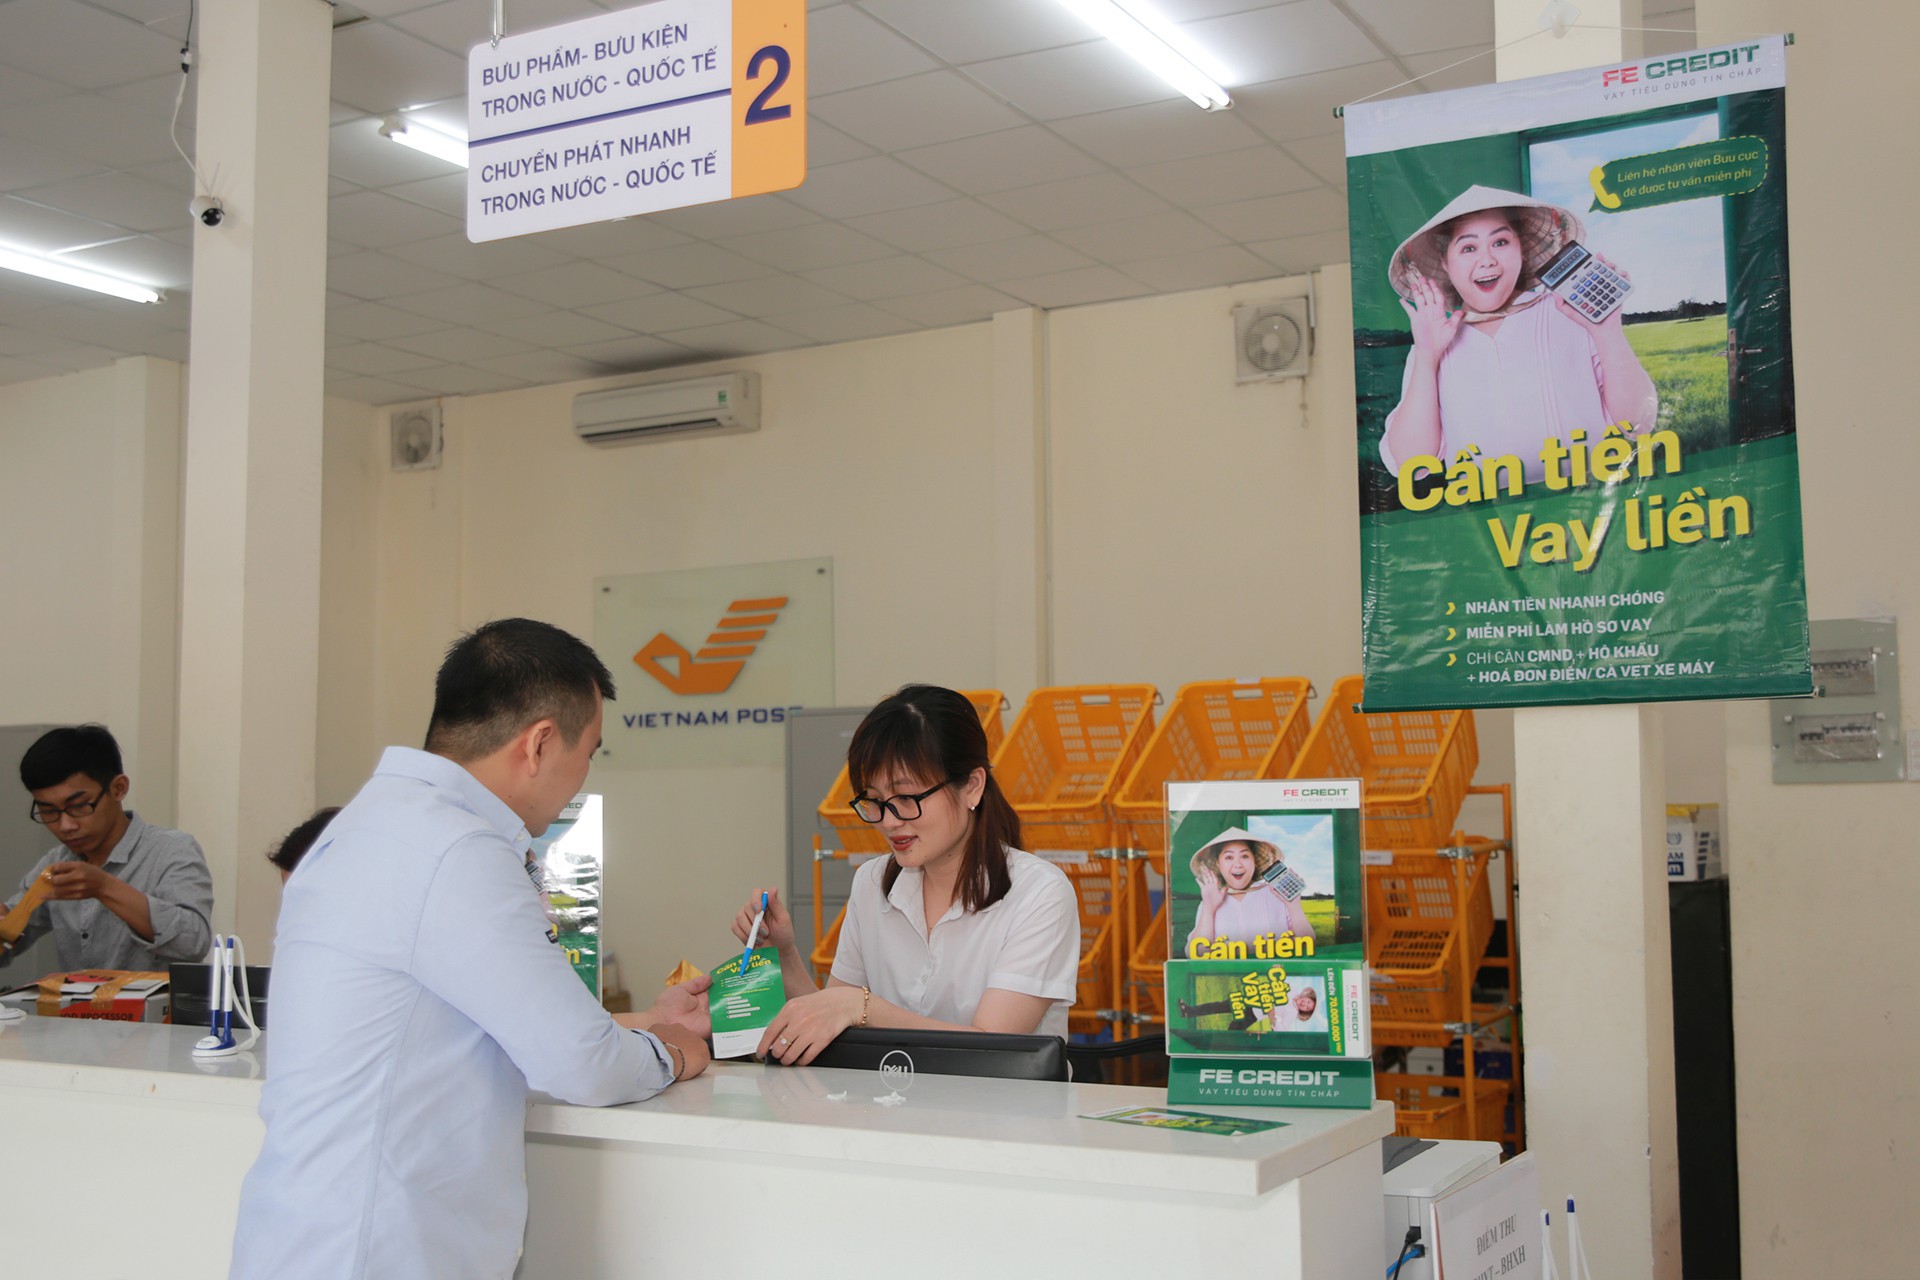 FE CREDIT hợp tác với Bưu điện Việt Nam giới thiệu dịch vụ cho vay tiêu dùng tới khu vực nông thôn - Ảnh 2.